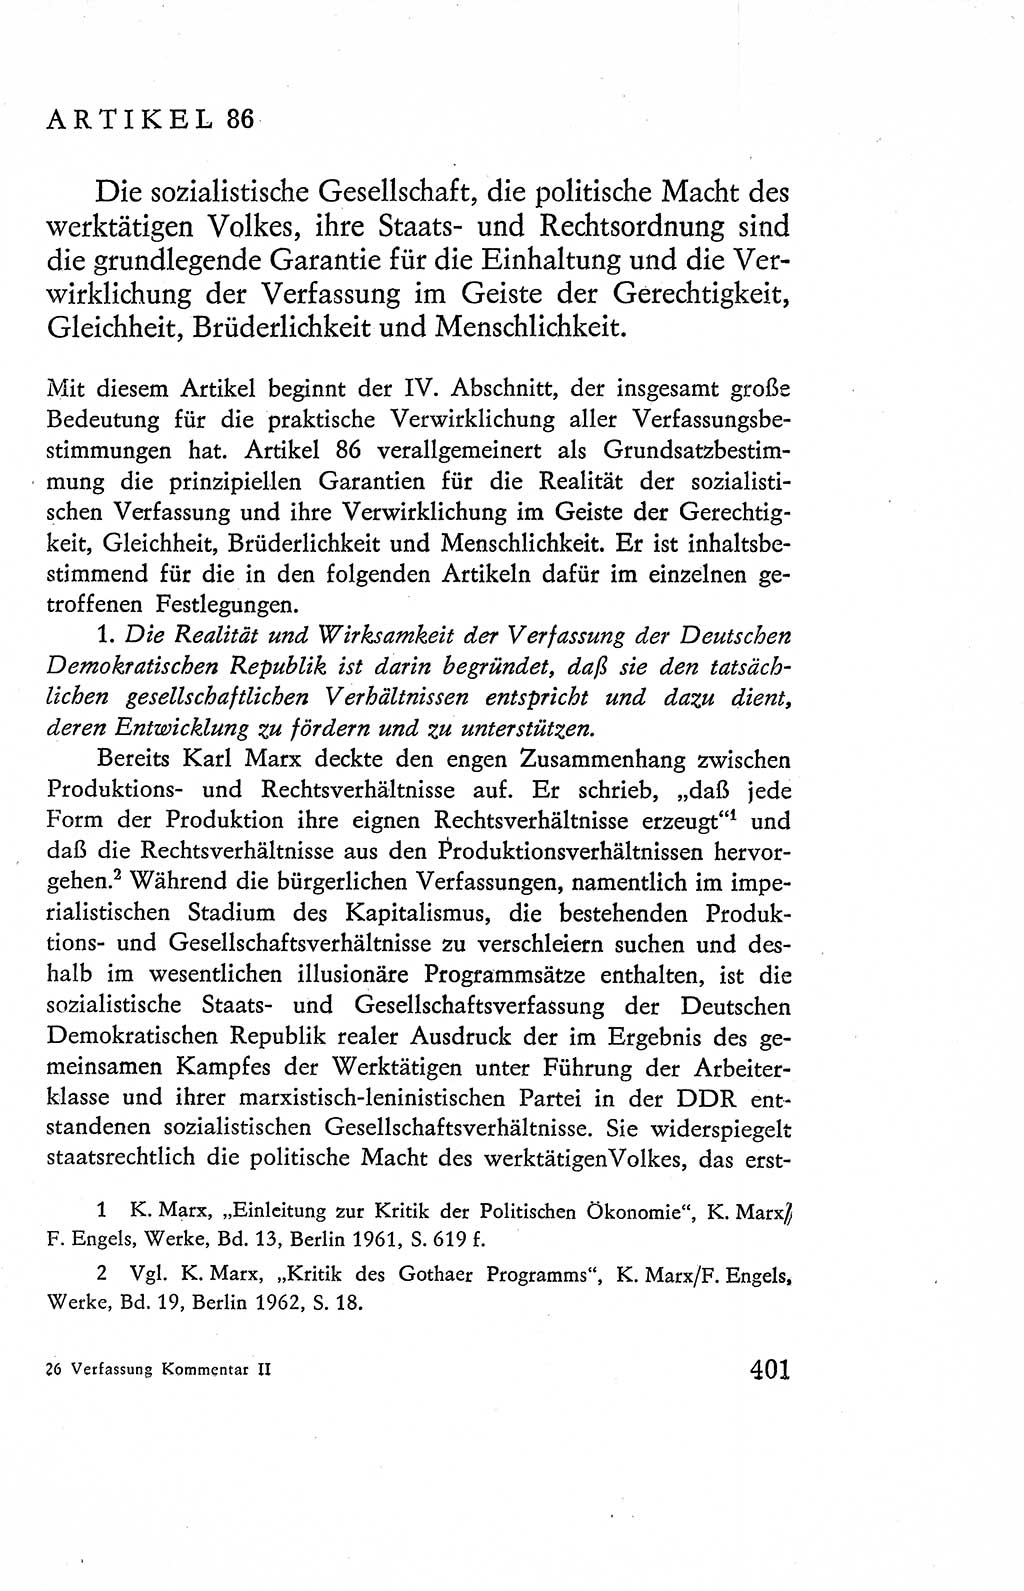 Verfassung der Deutschen Demokratischen Republik (DDR), Dokumente, Kommentar 1969, Band 2, Seite 401 (Verf. DDR Dok. Komm. 1969, Bd. 2, S. 401)